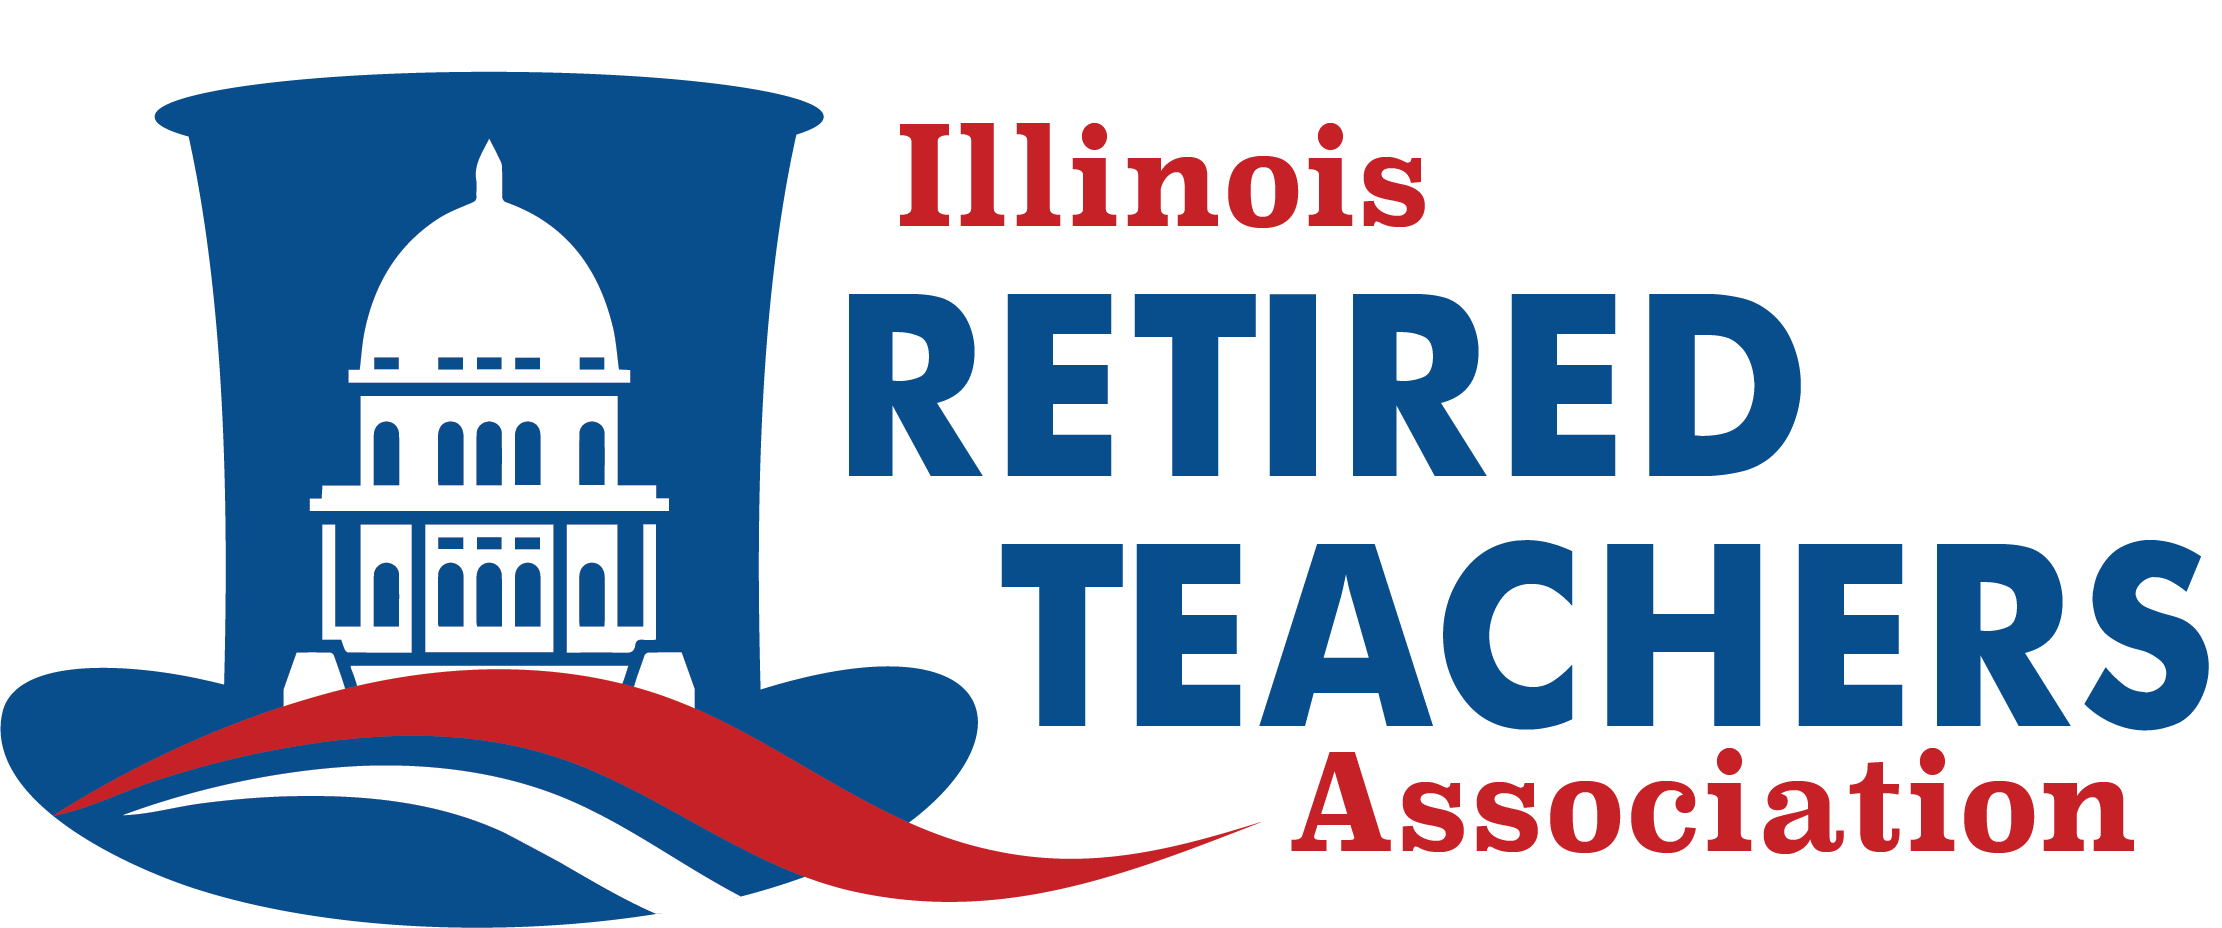 Illinois Retired Teachers Association